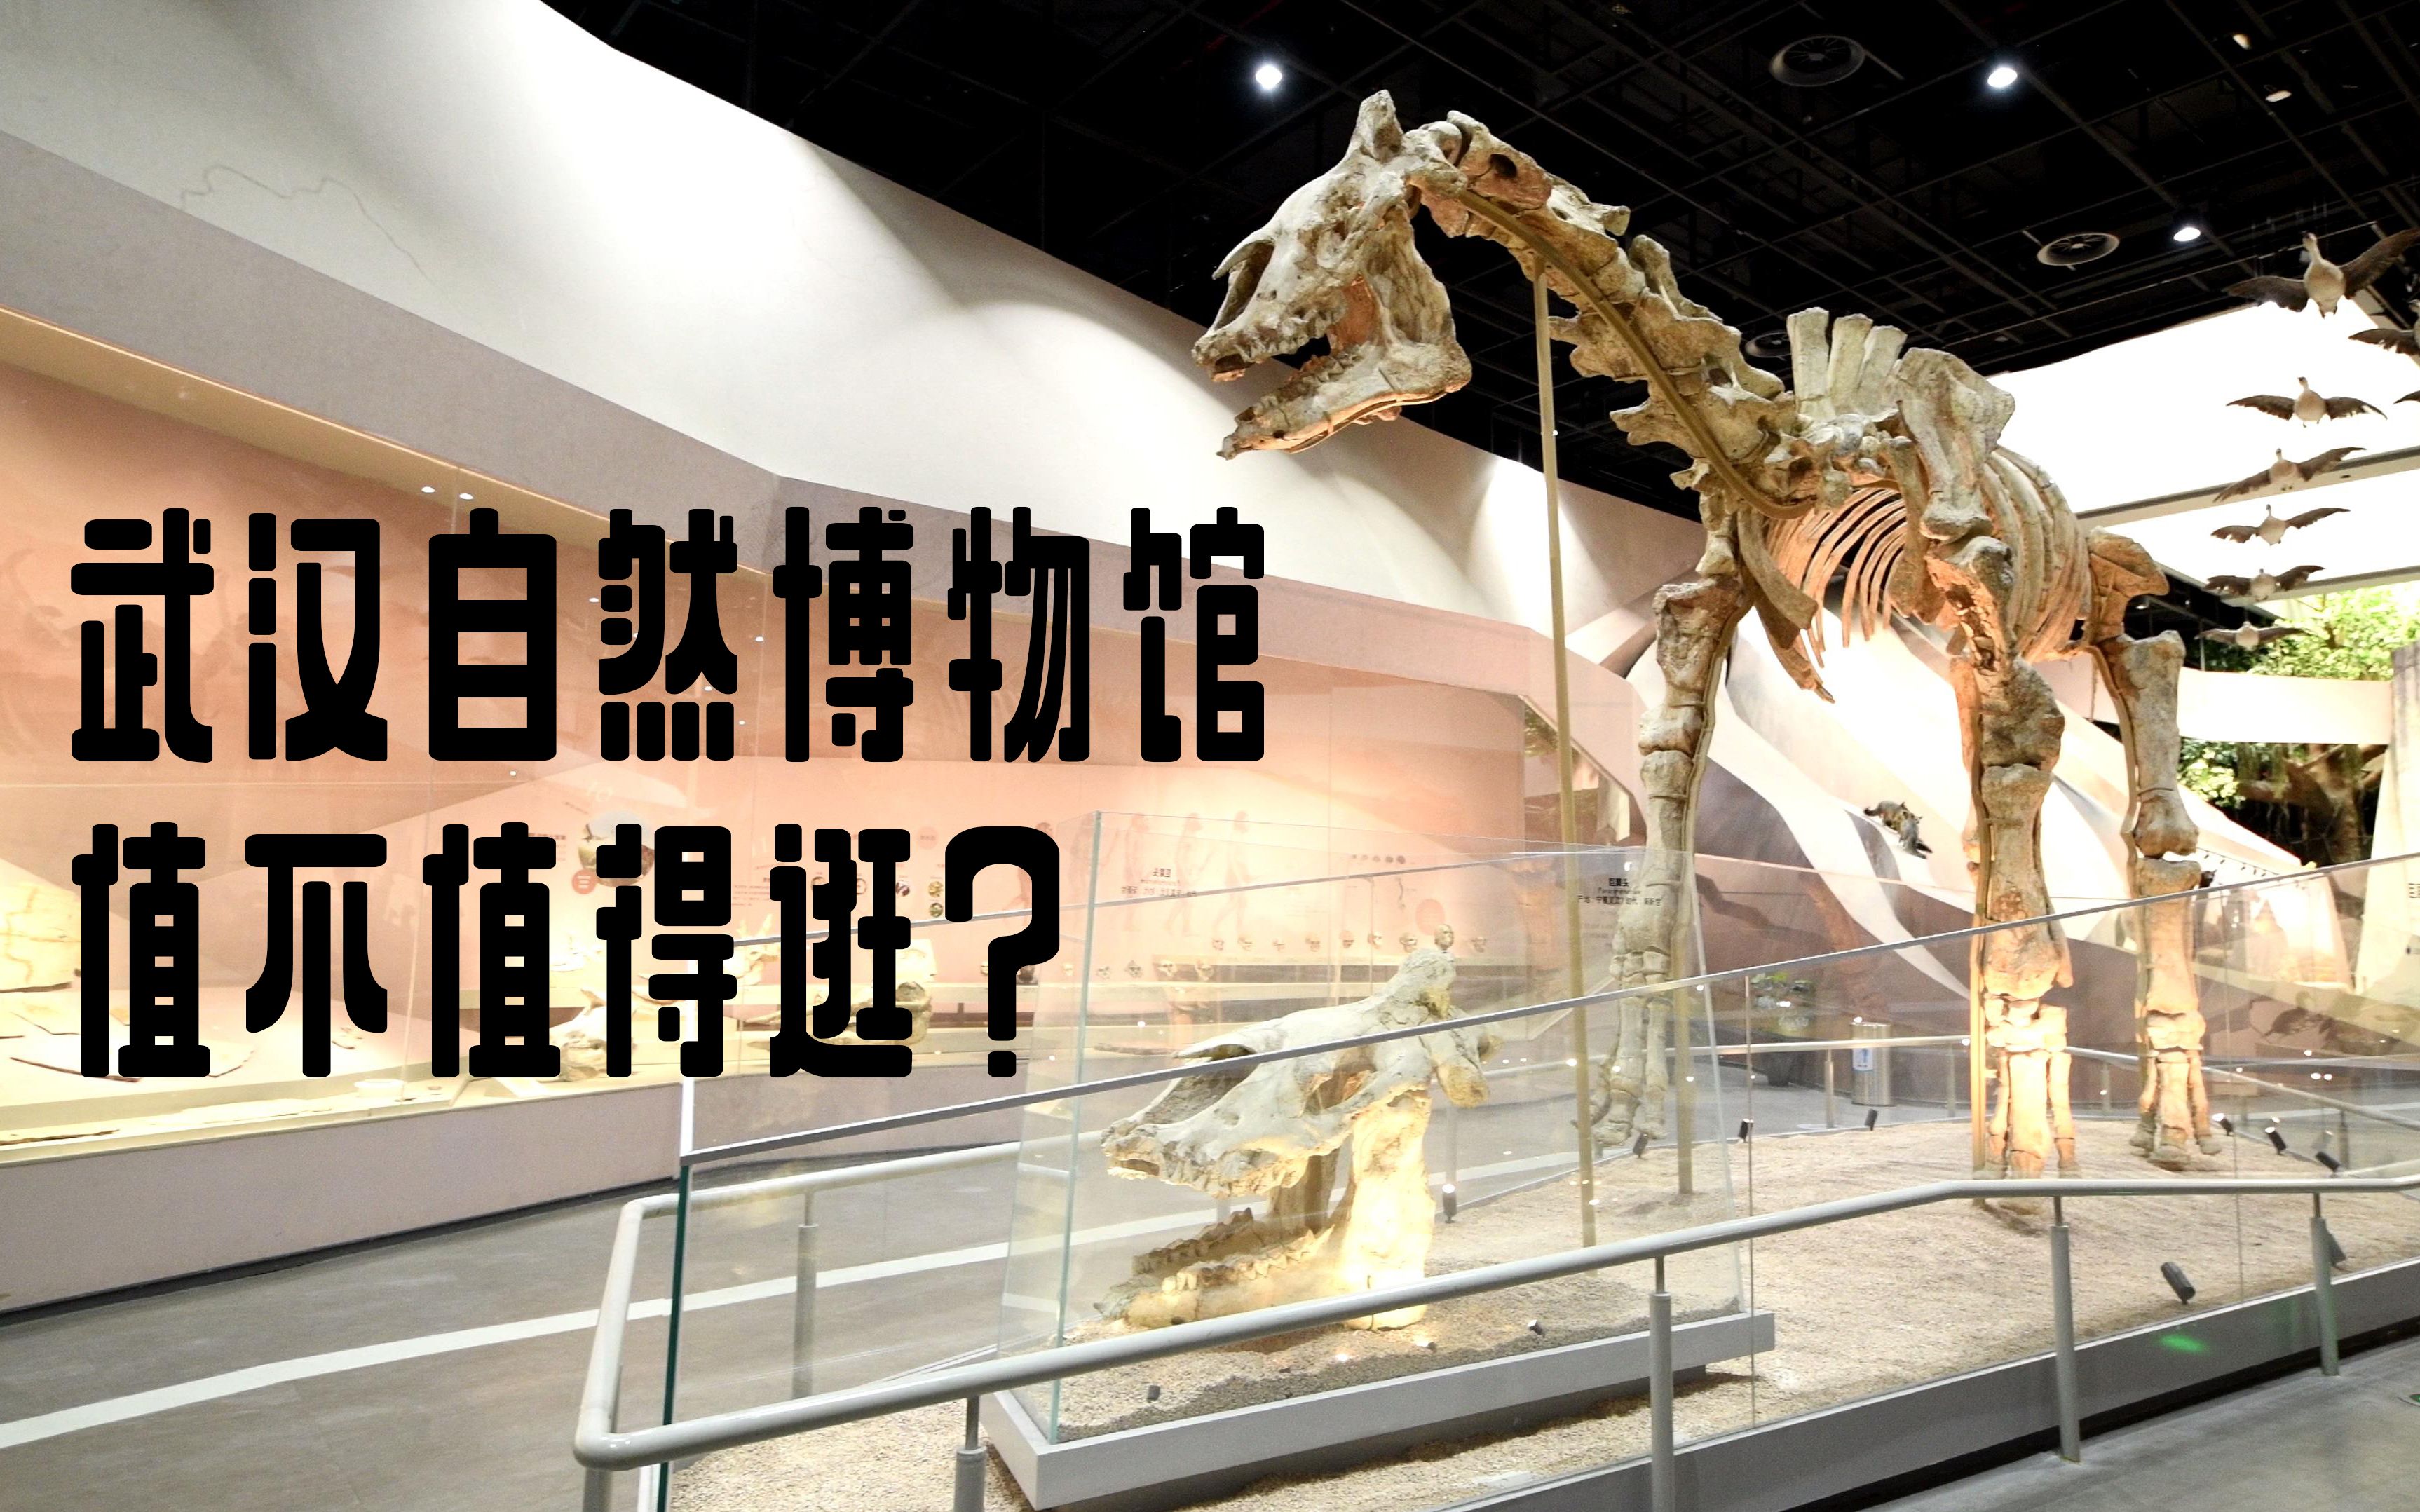 武汉自然博物馆照片图片